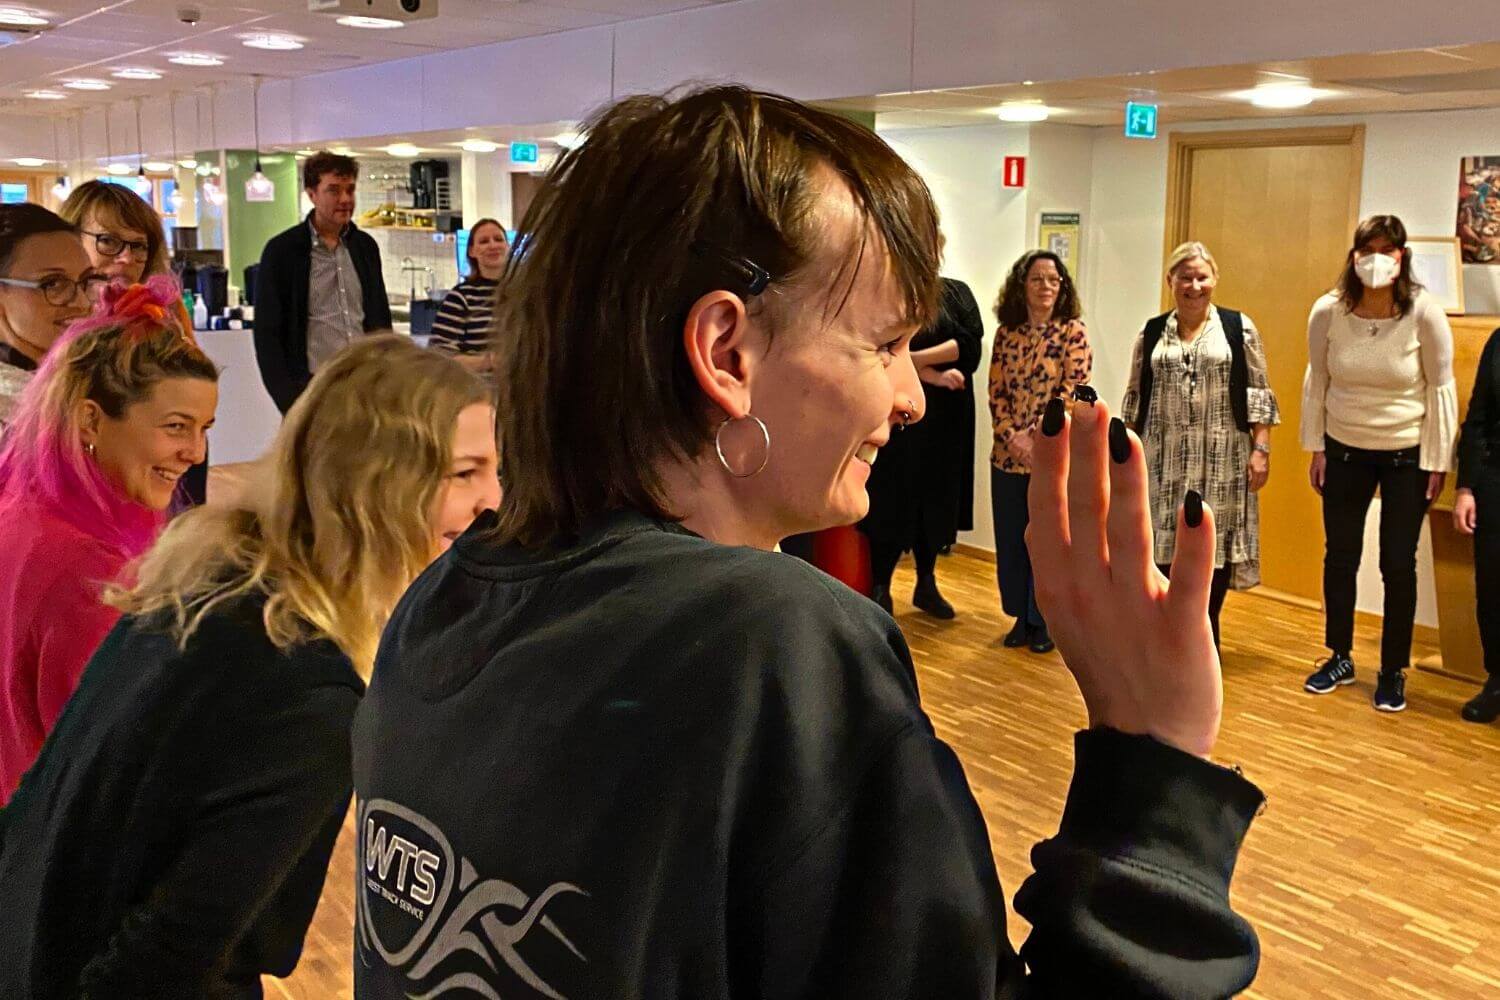 Deltagare i Ny i Sensus står i en ring och gör dramaövningen "Zipp, zapp, boing!"